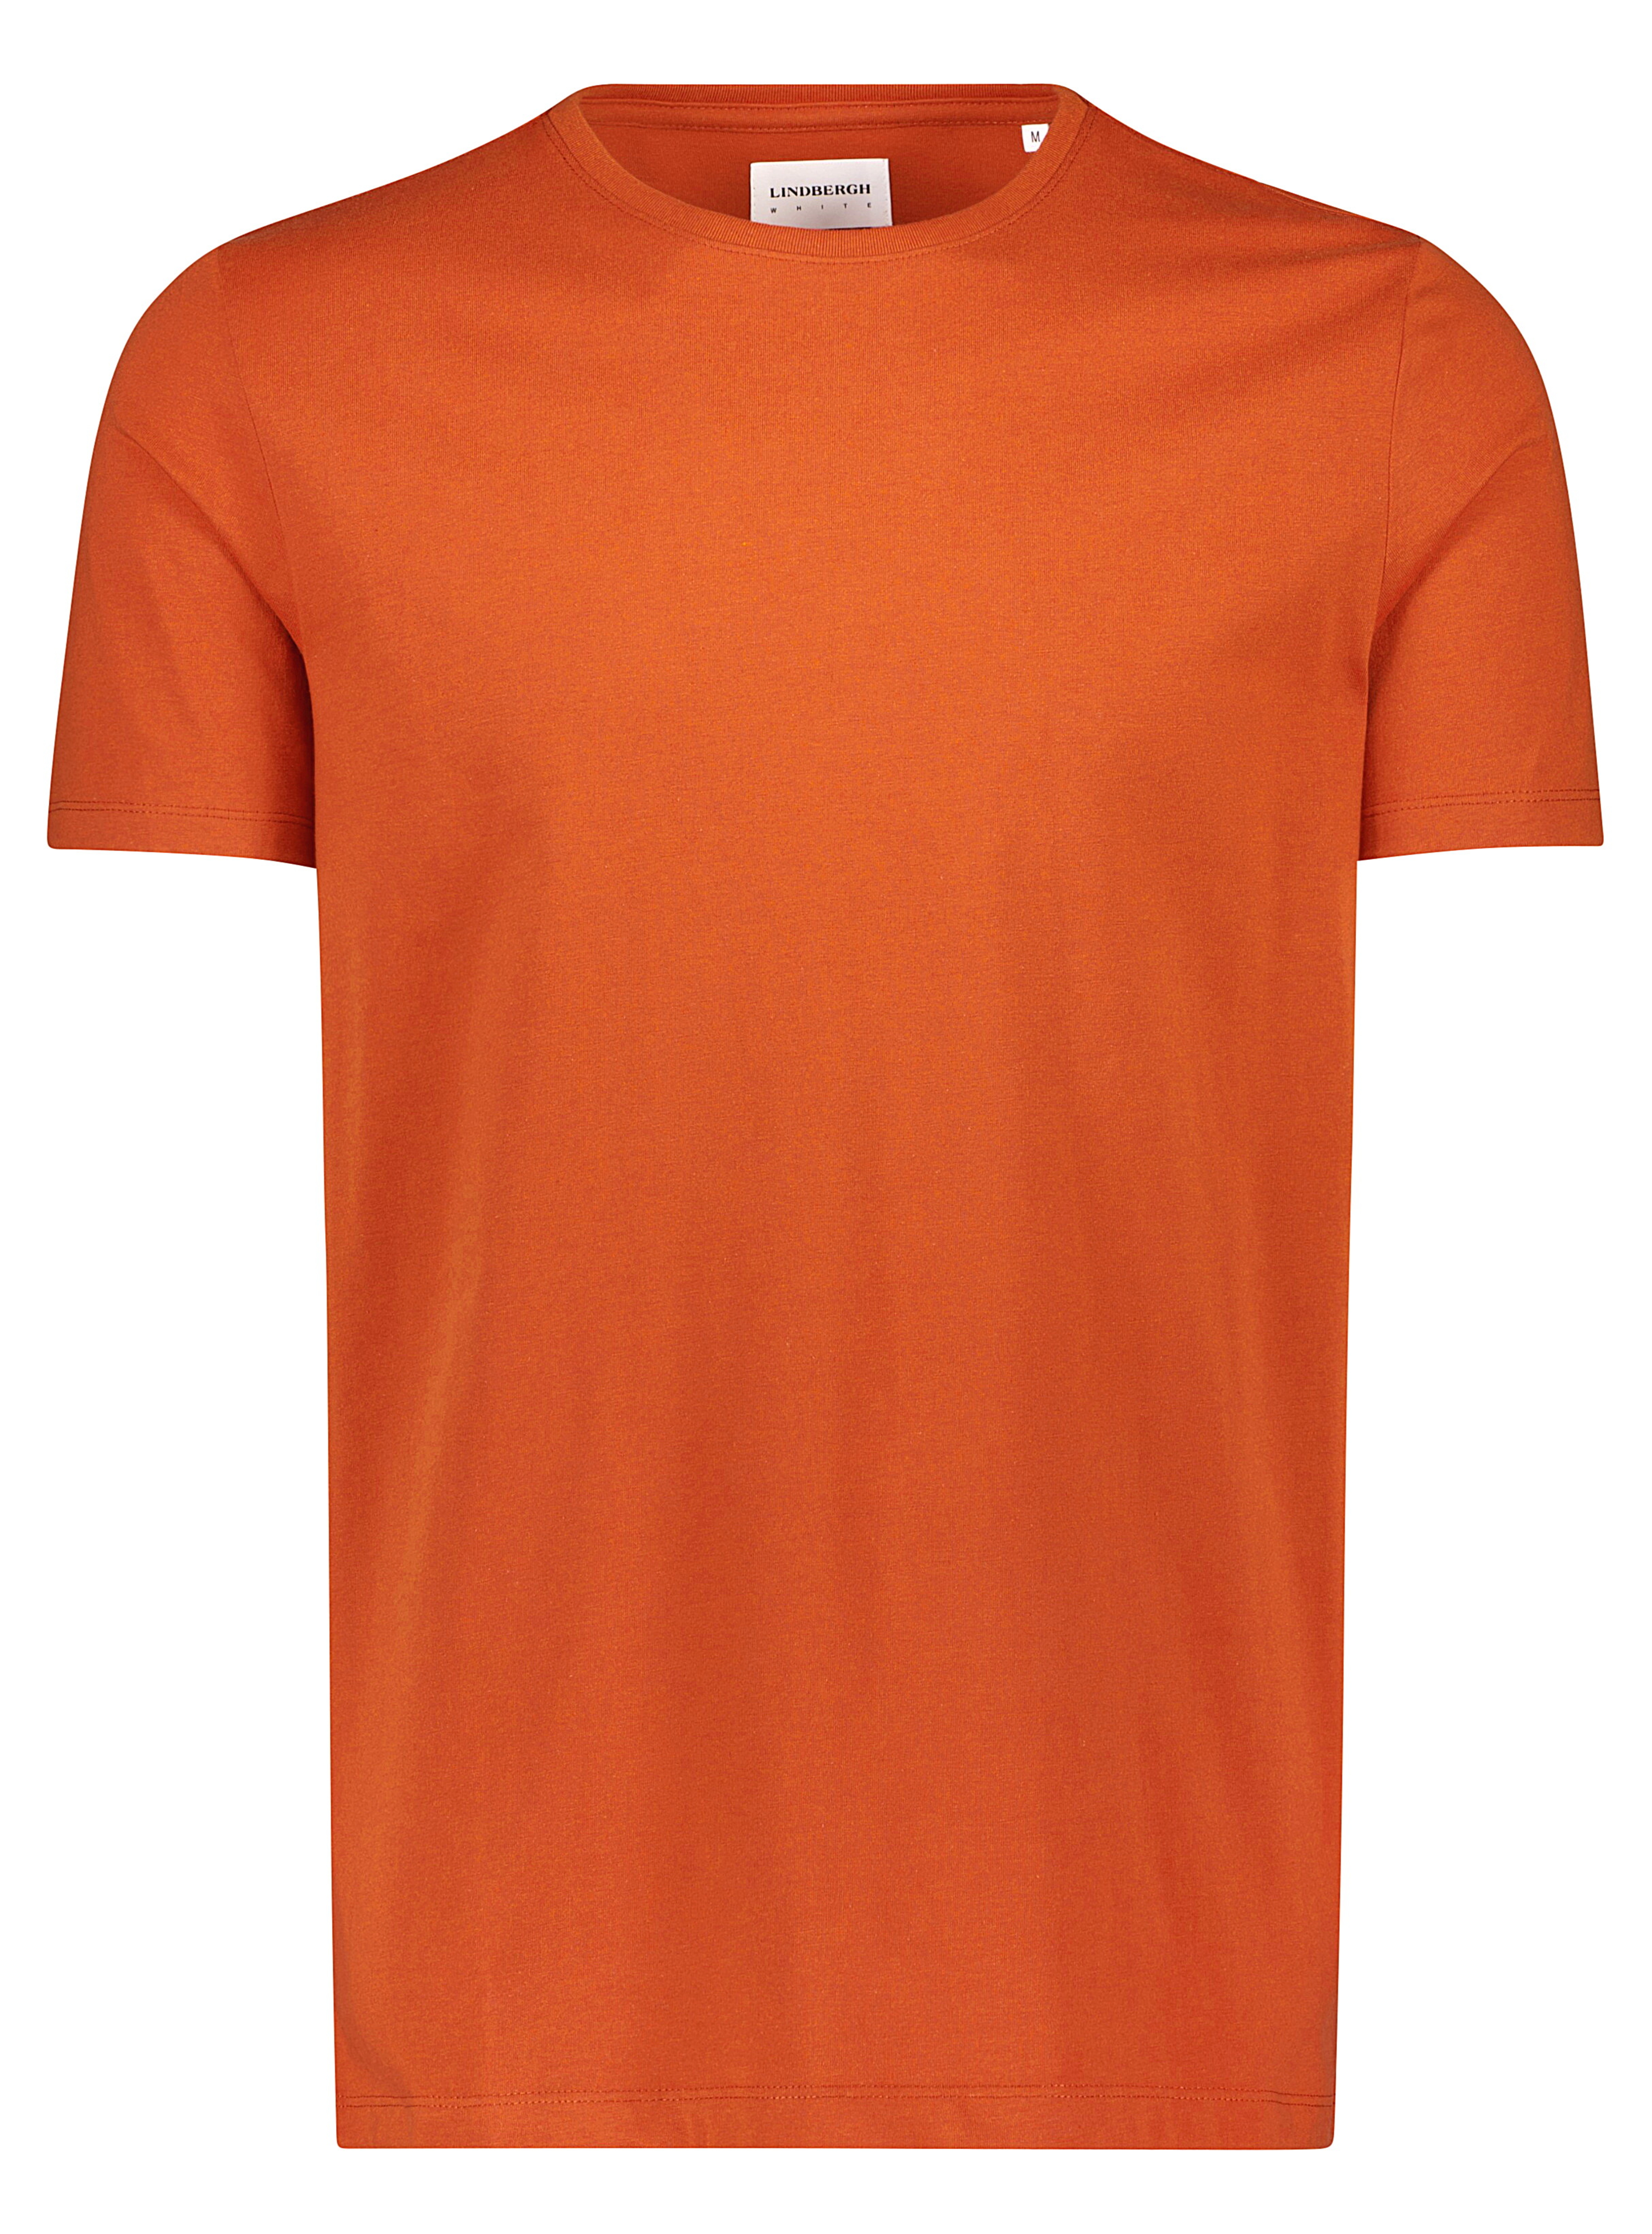 Lindbergh T-Shirt braun / brown orange mix